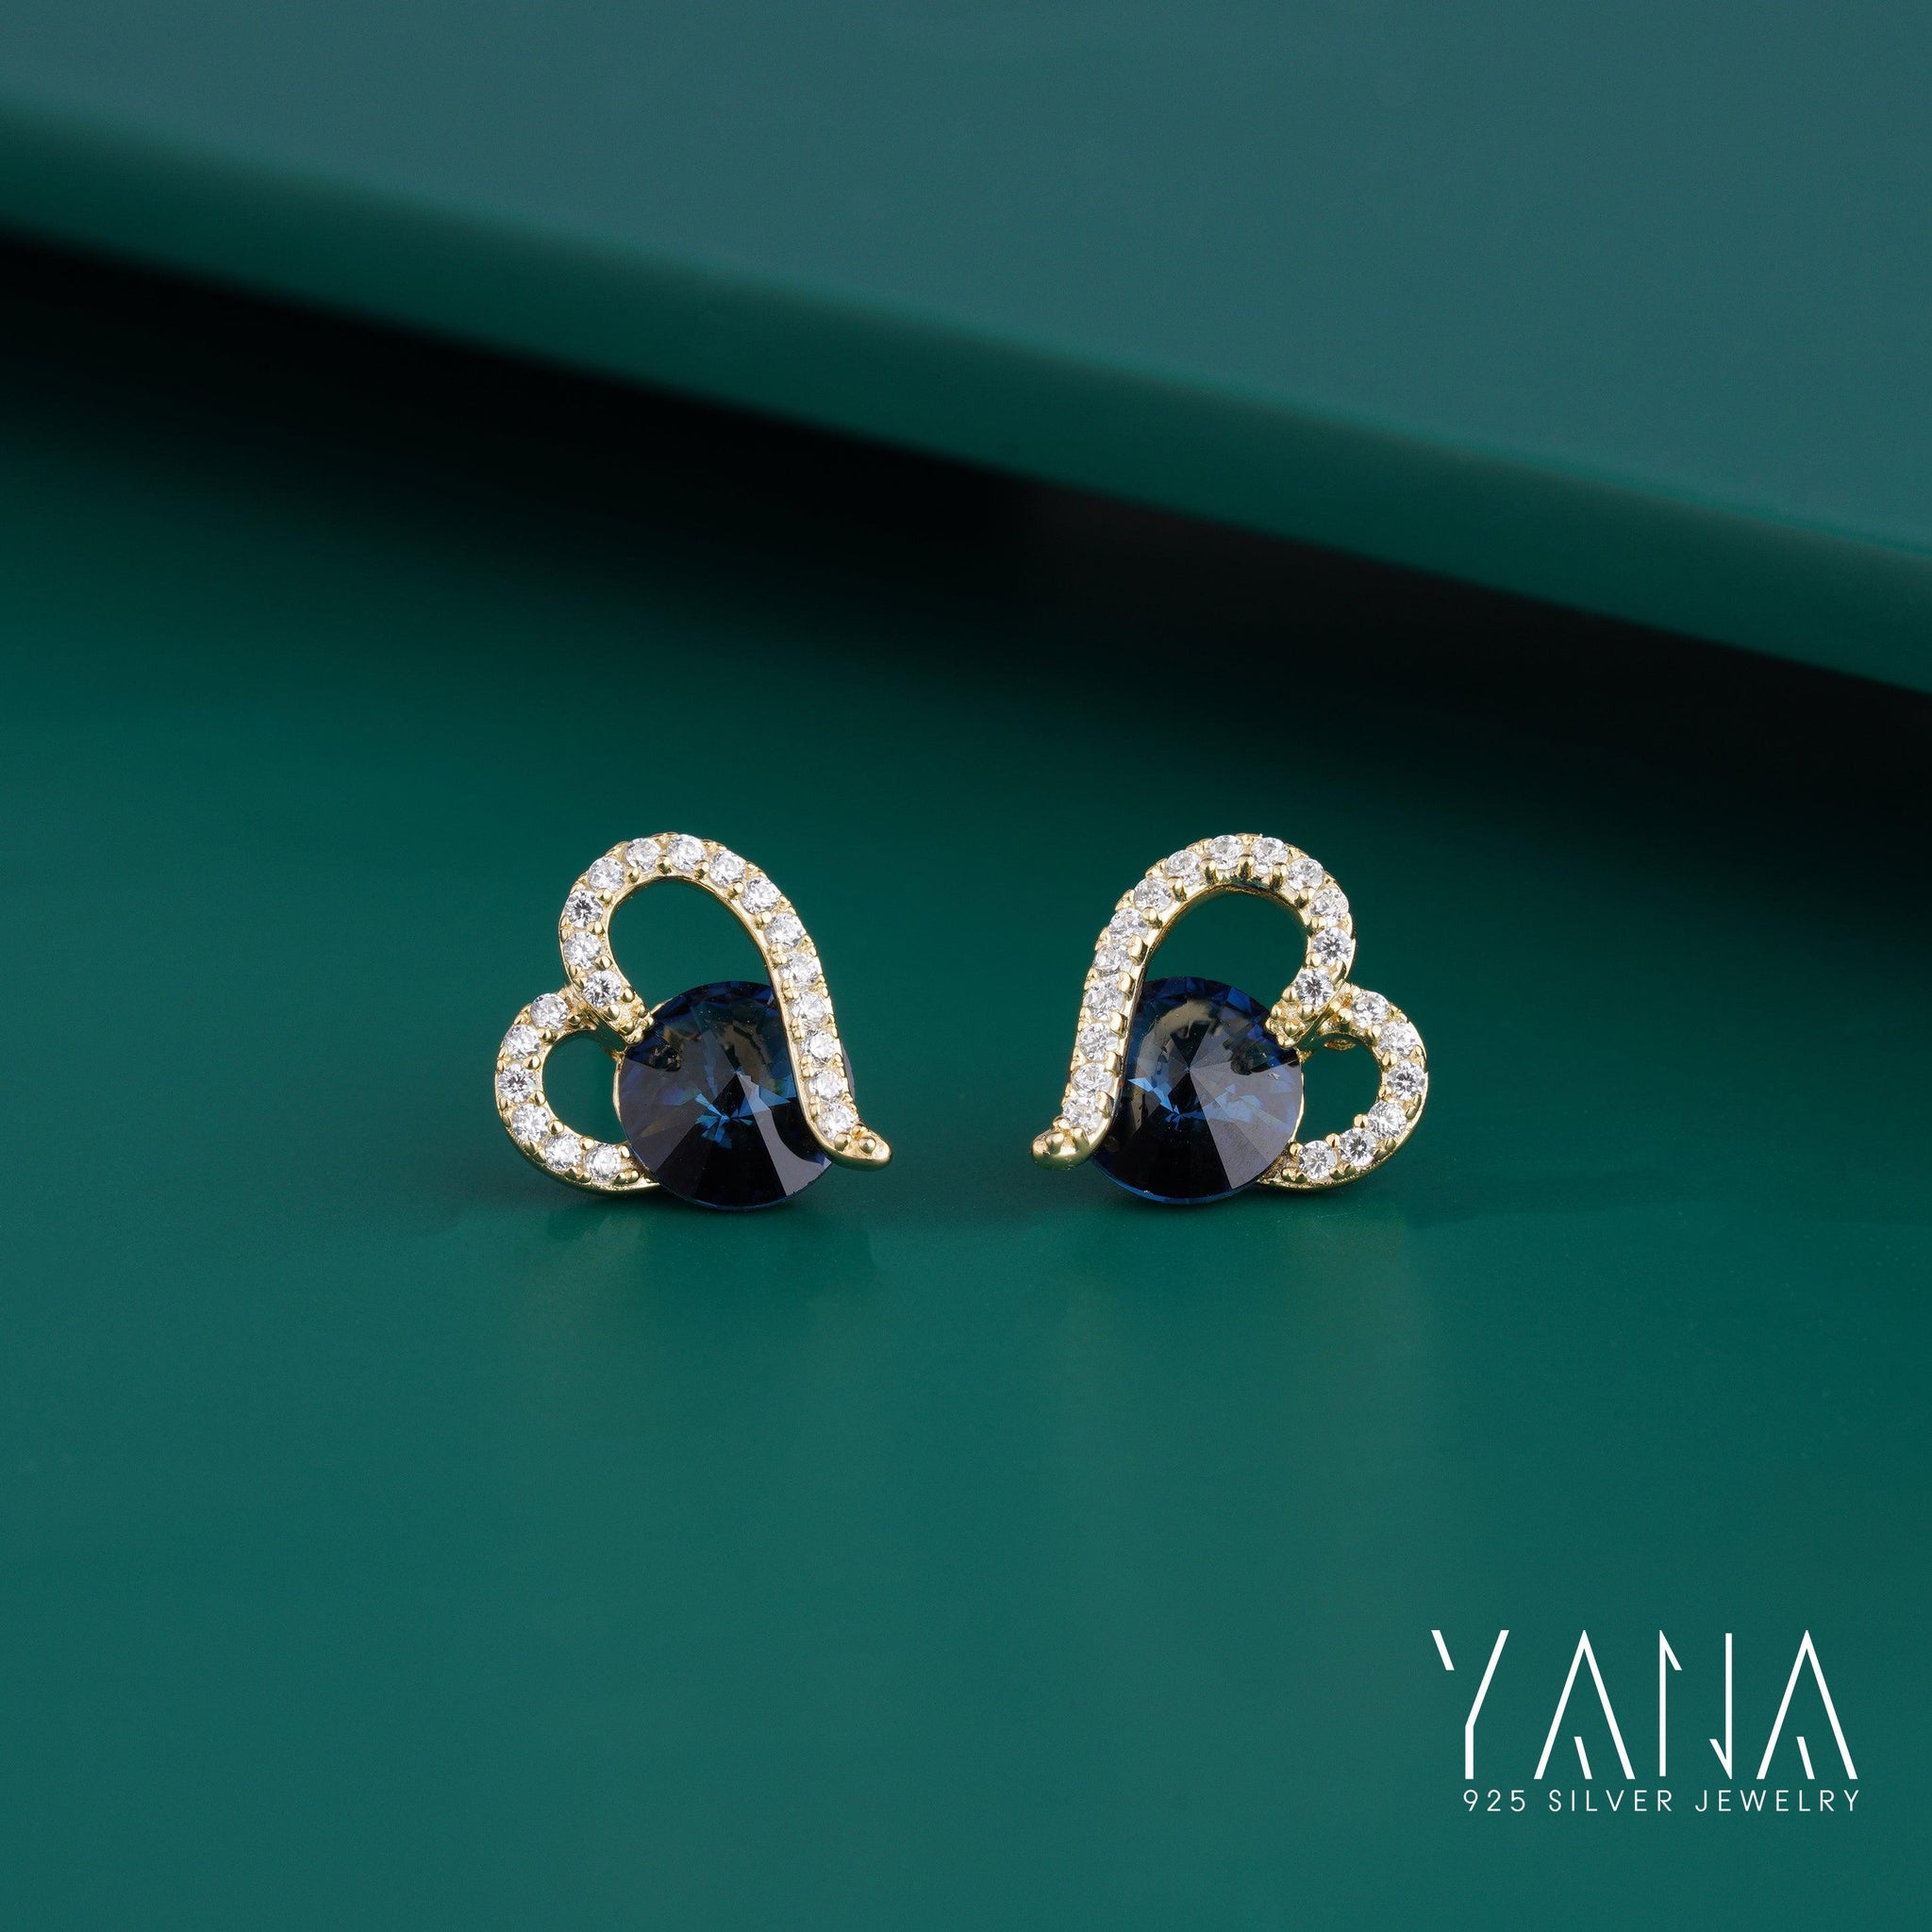 Blue Zircon Sapphire Stone Heart Earrings For Women In 925 Silver - YANA SILVER